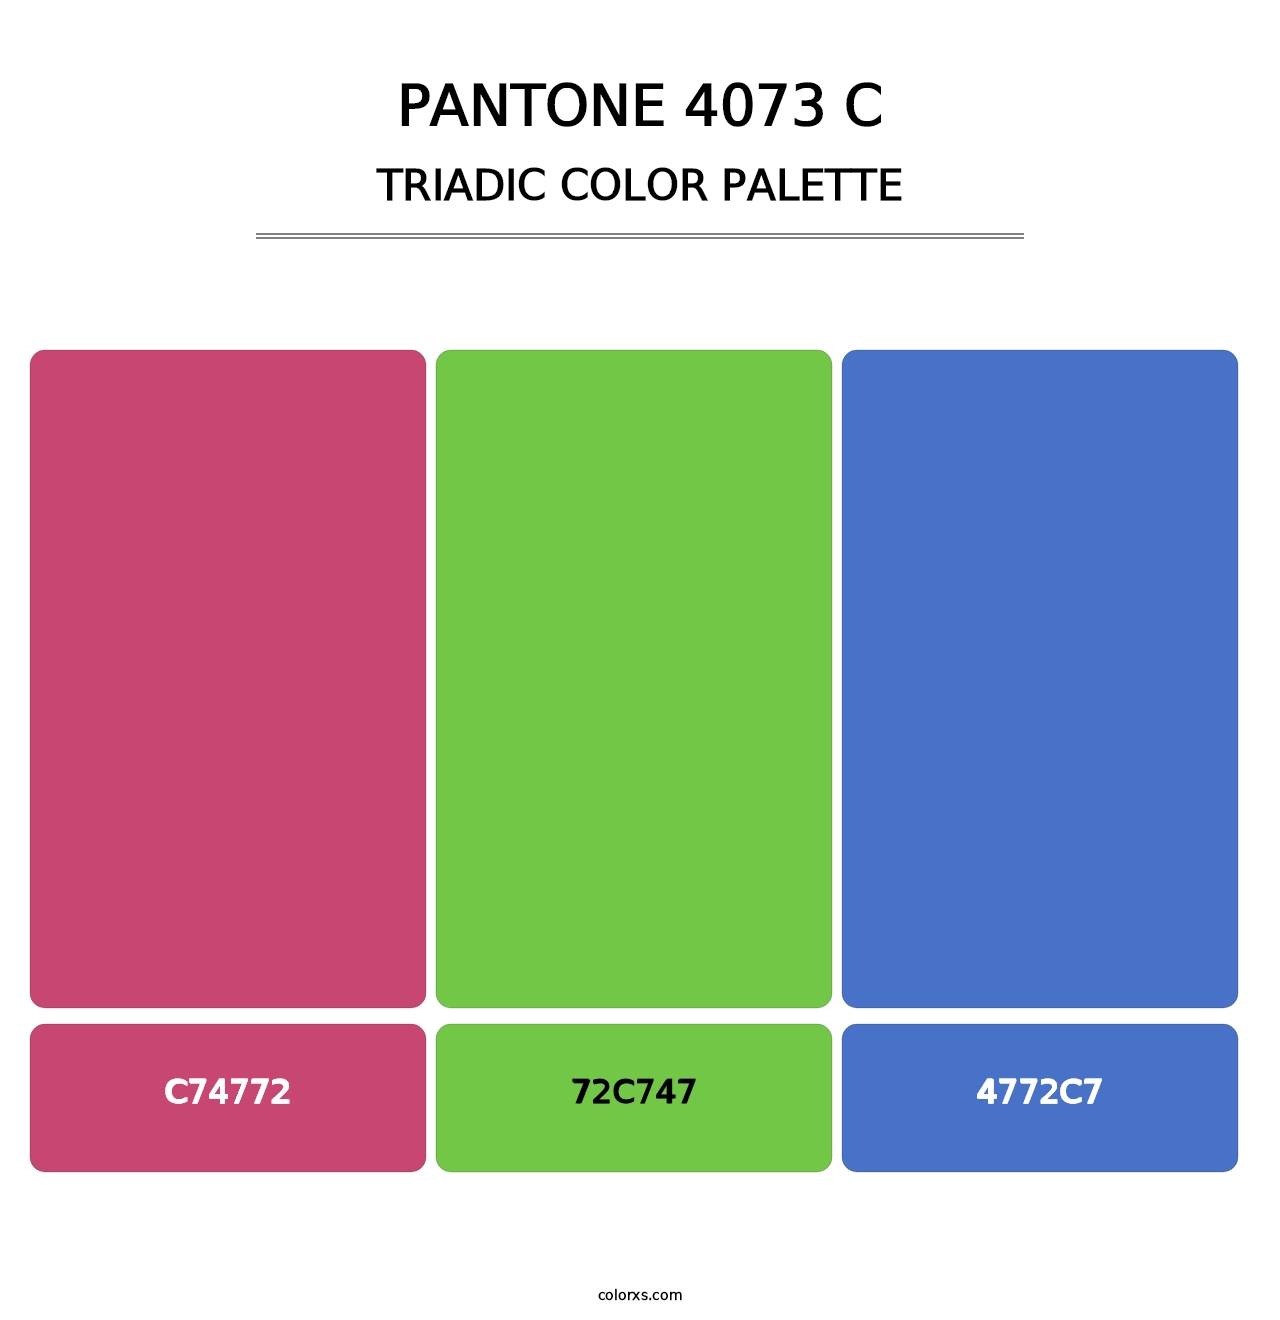 PANTONE 4073 C - Triadic Color Palette